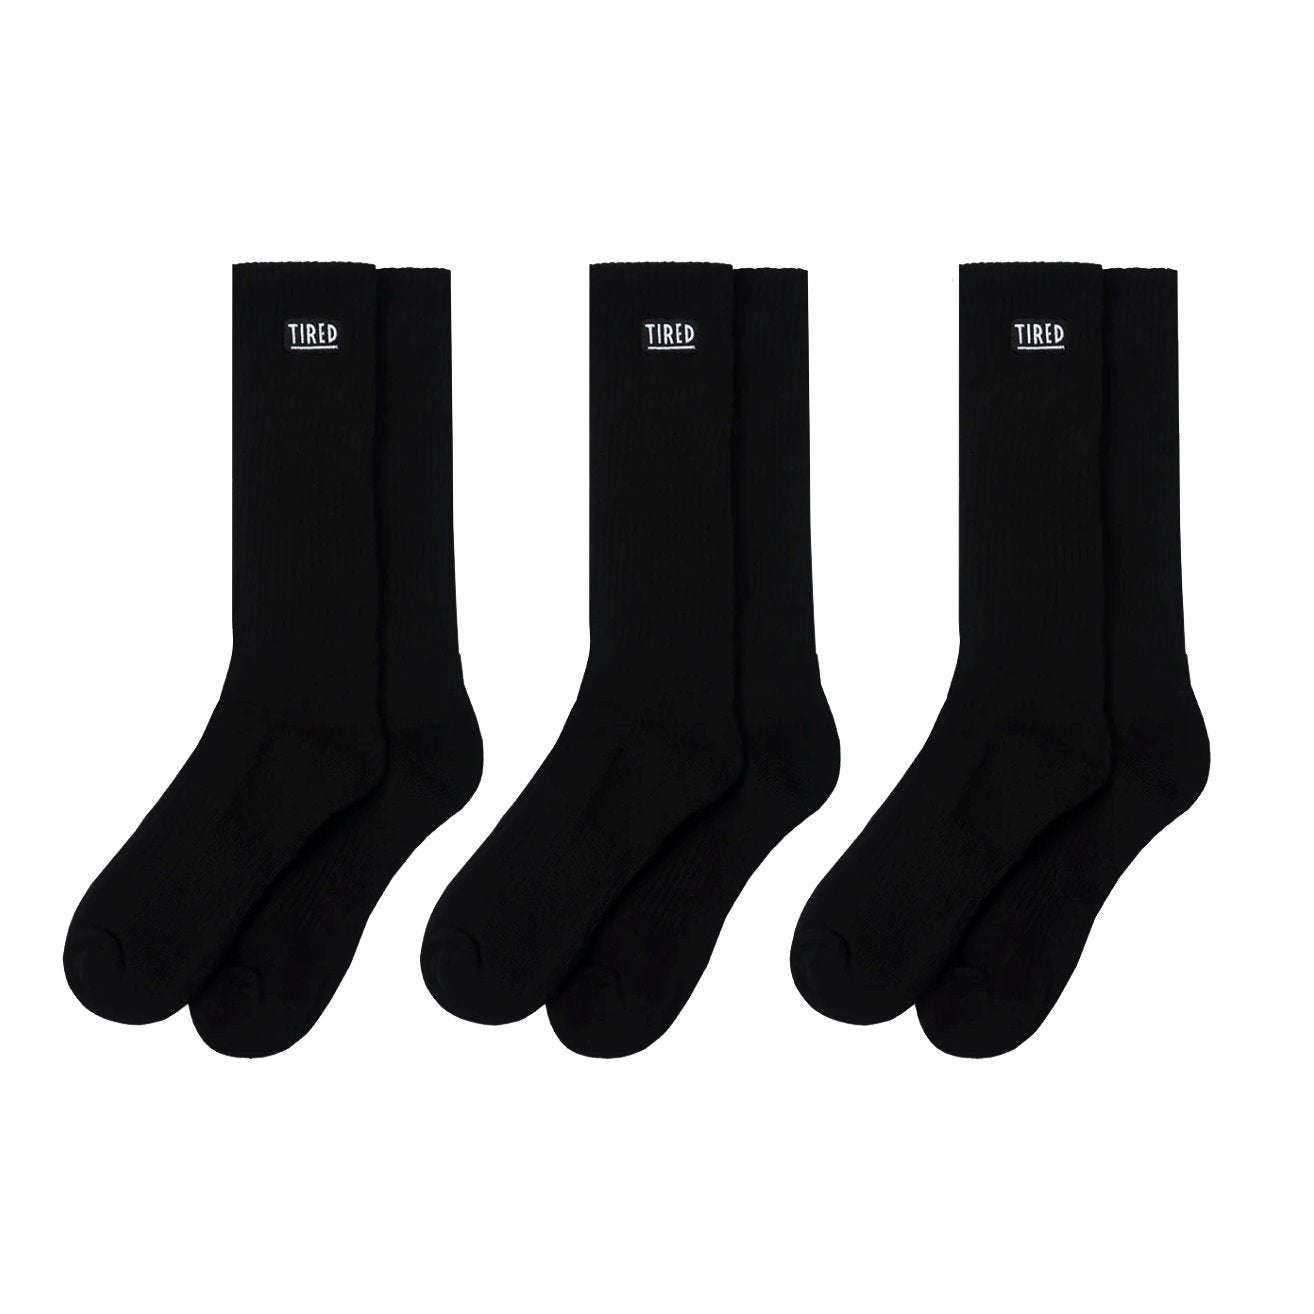 Tired OG Crew Socks (3 Pack) - Black Socken Tired 